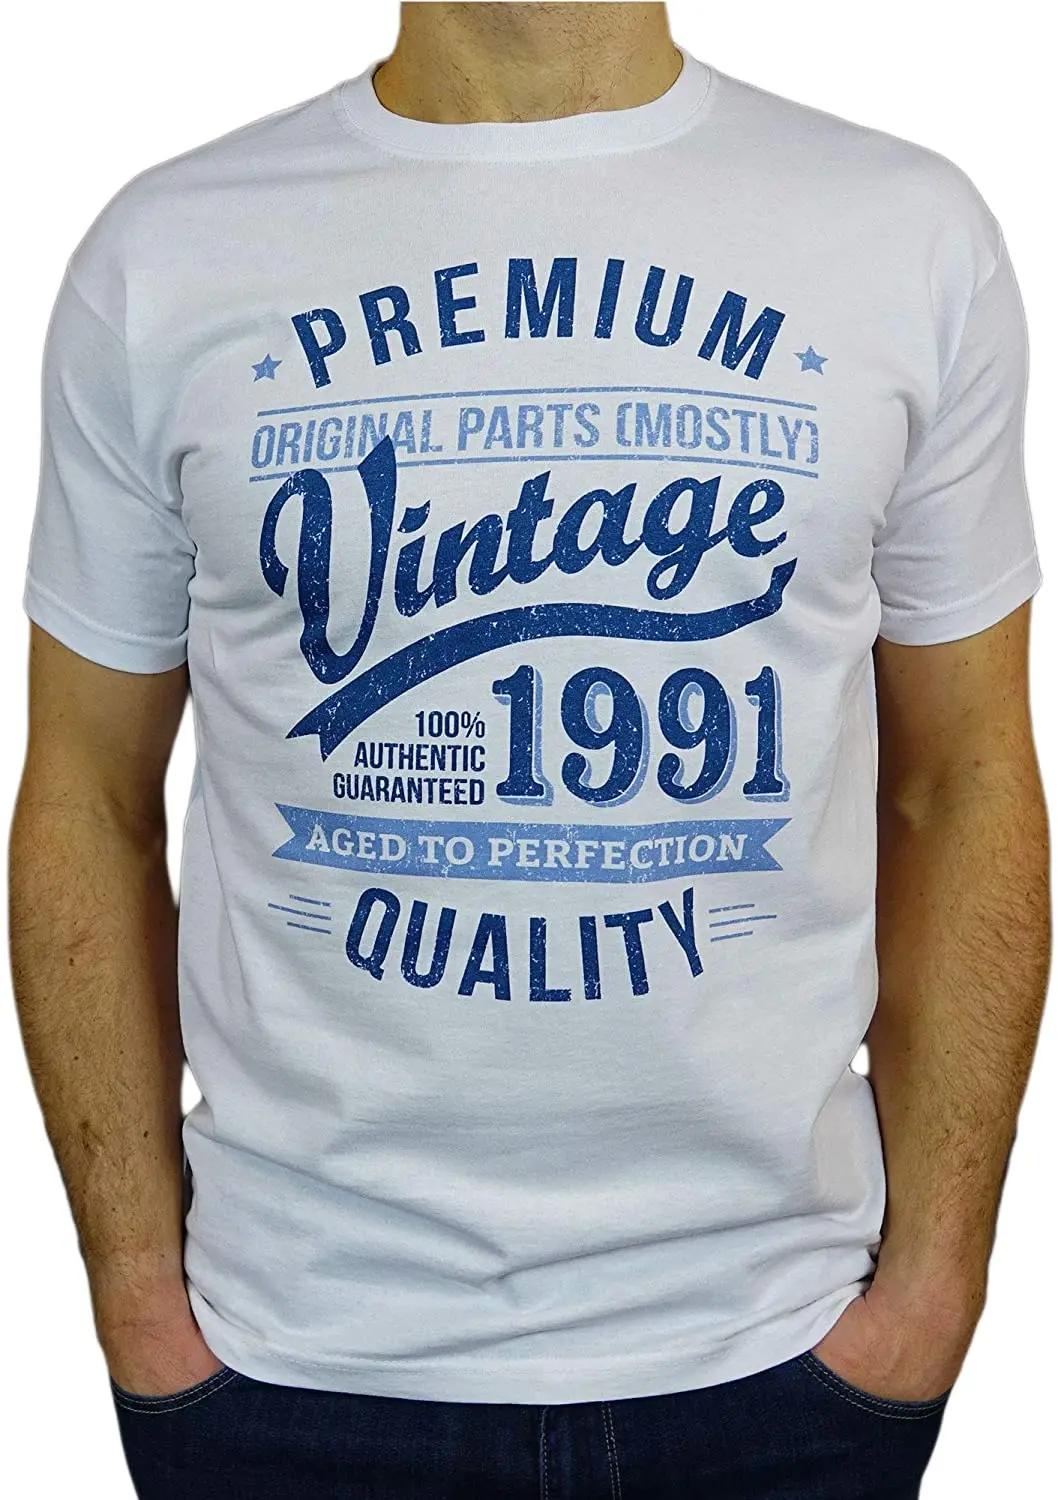 

Мужская футболка в винтажном стиле, с надписью «от года до совершенства», подарок на 30-й день рождения, 1991